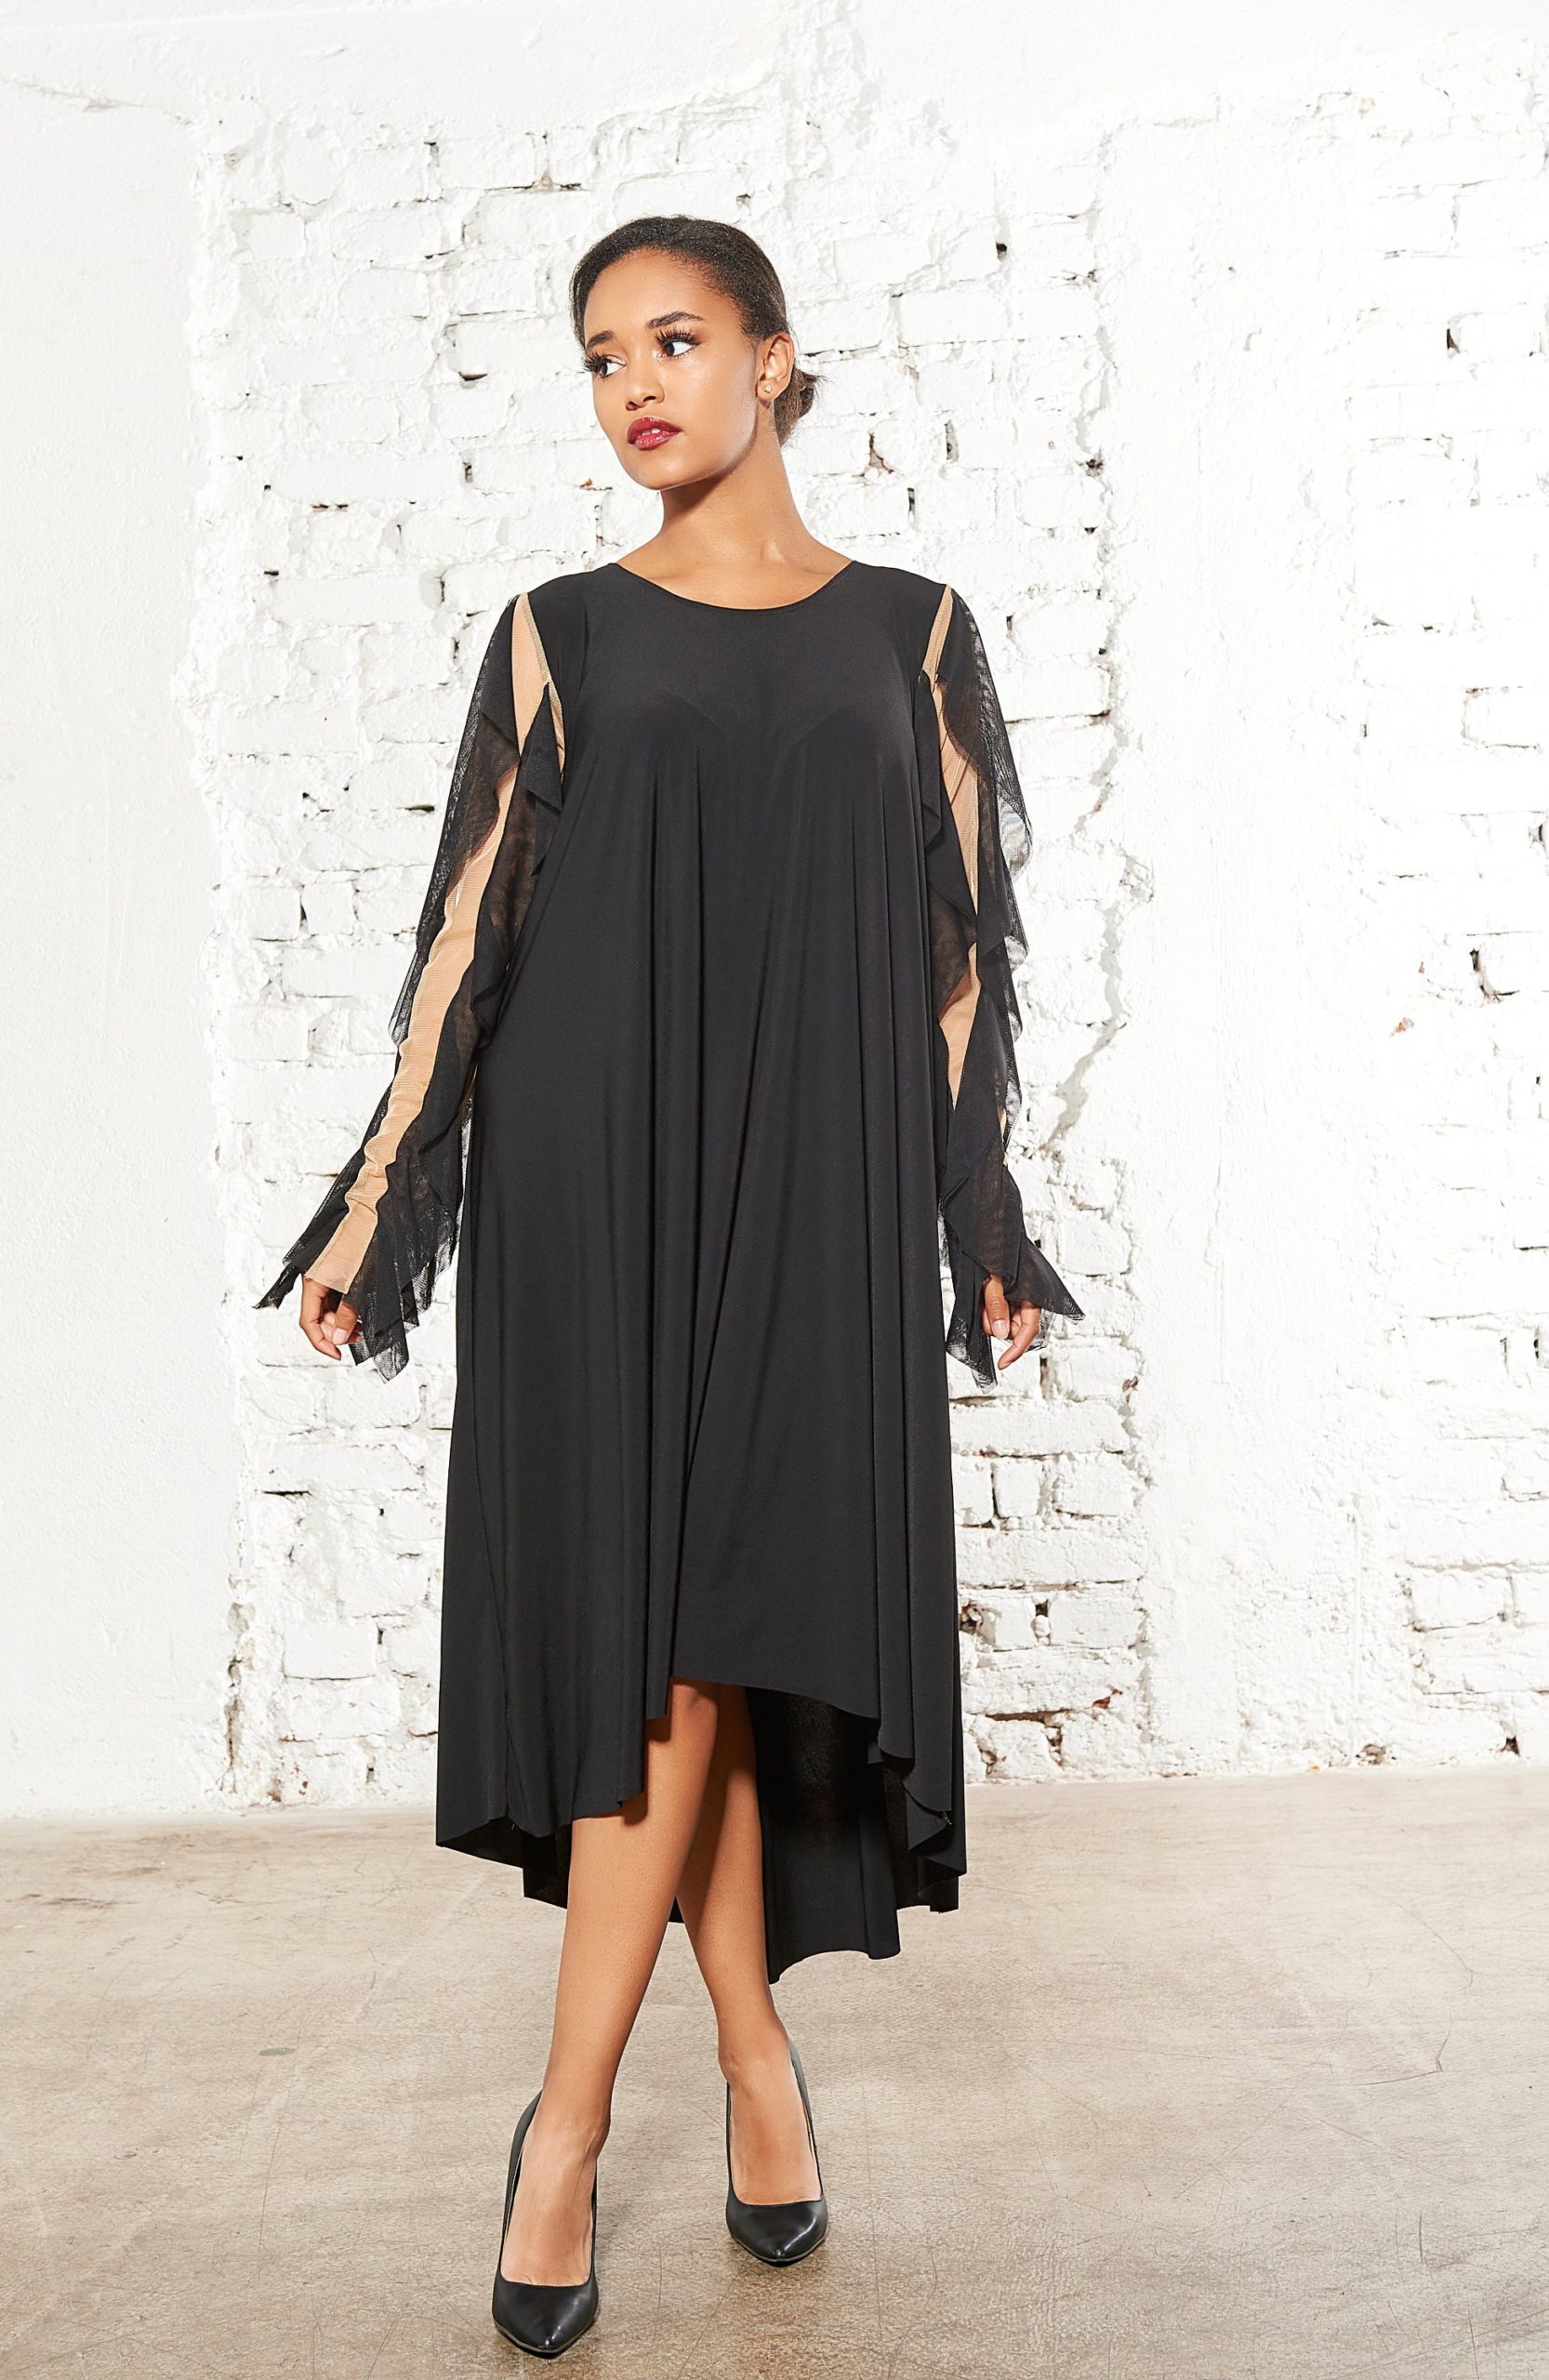 Black Dress With Mesh Sleeves - ALLSEAMS